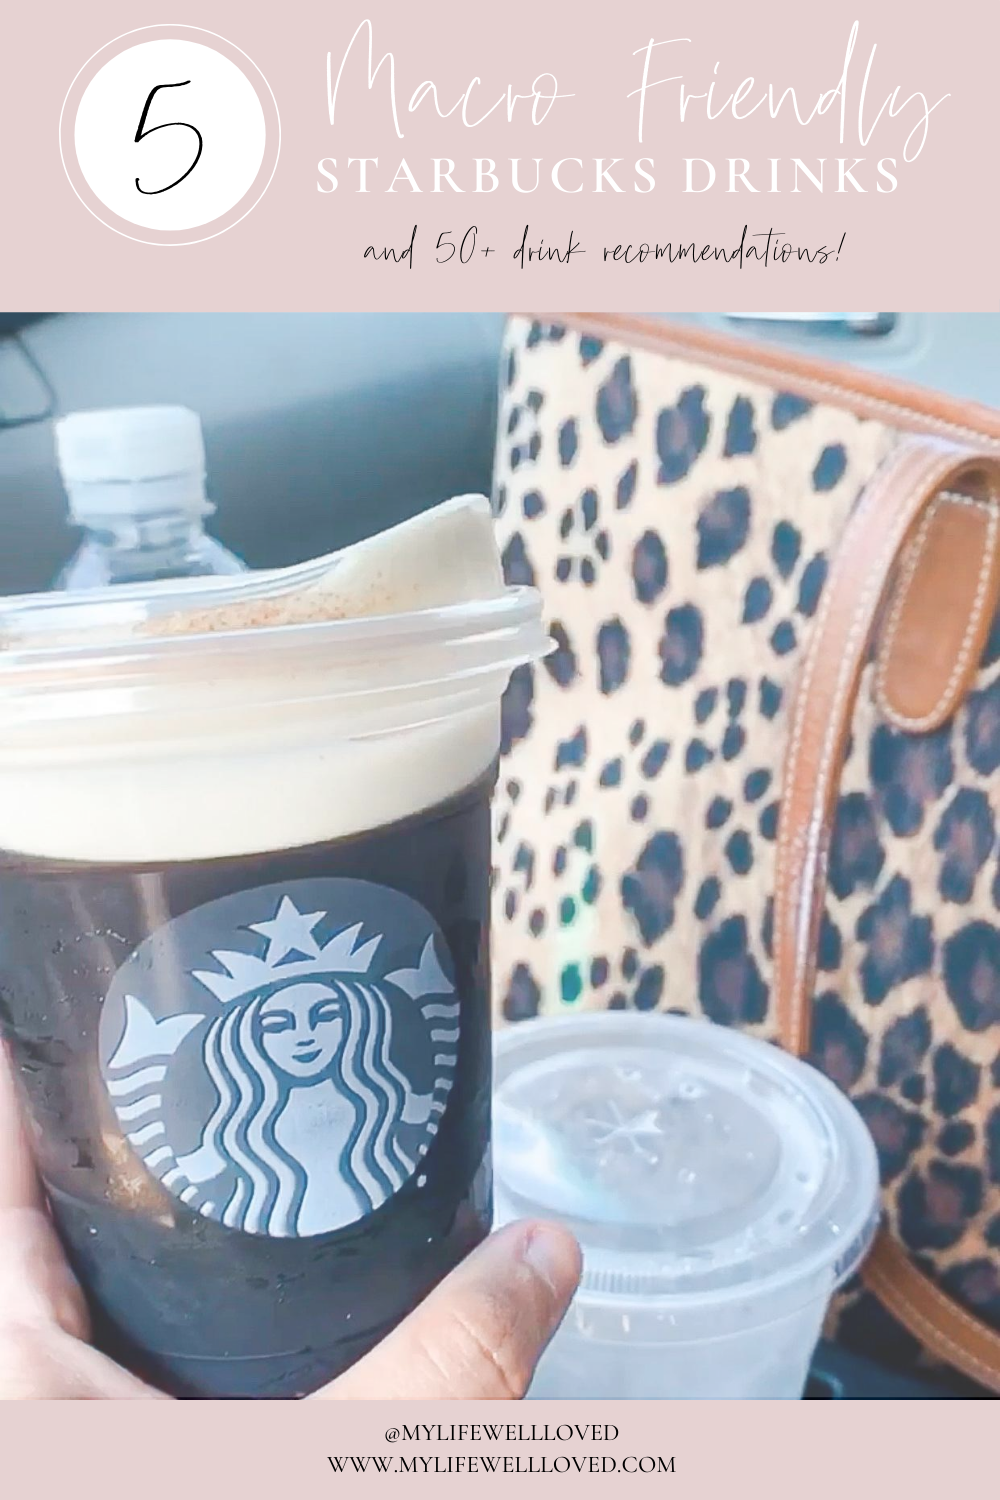 Do Starbucks Refreshers Have Caffeine In 2022? (Full Guide)